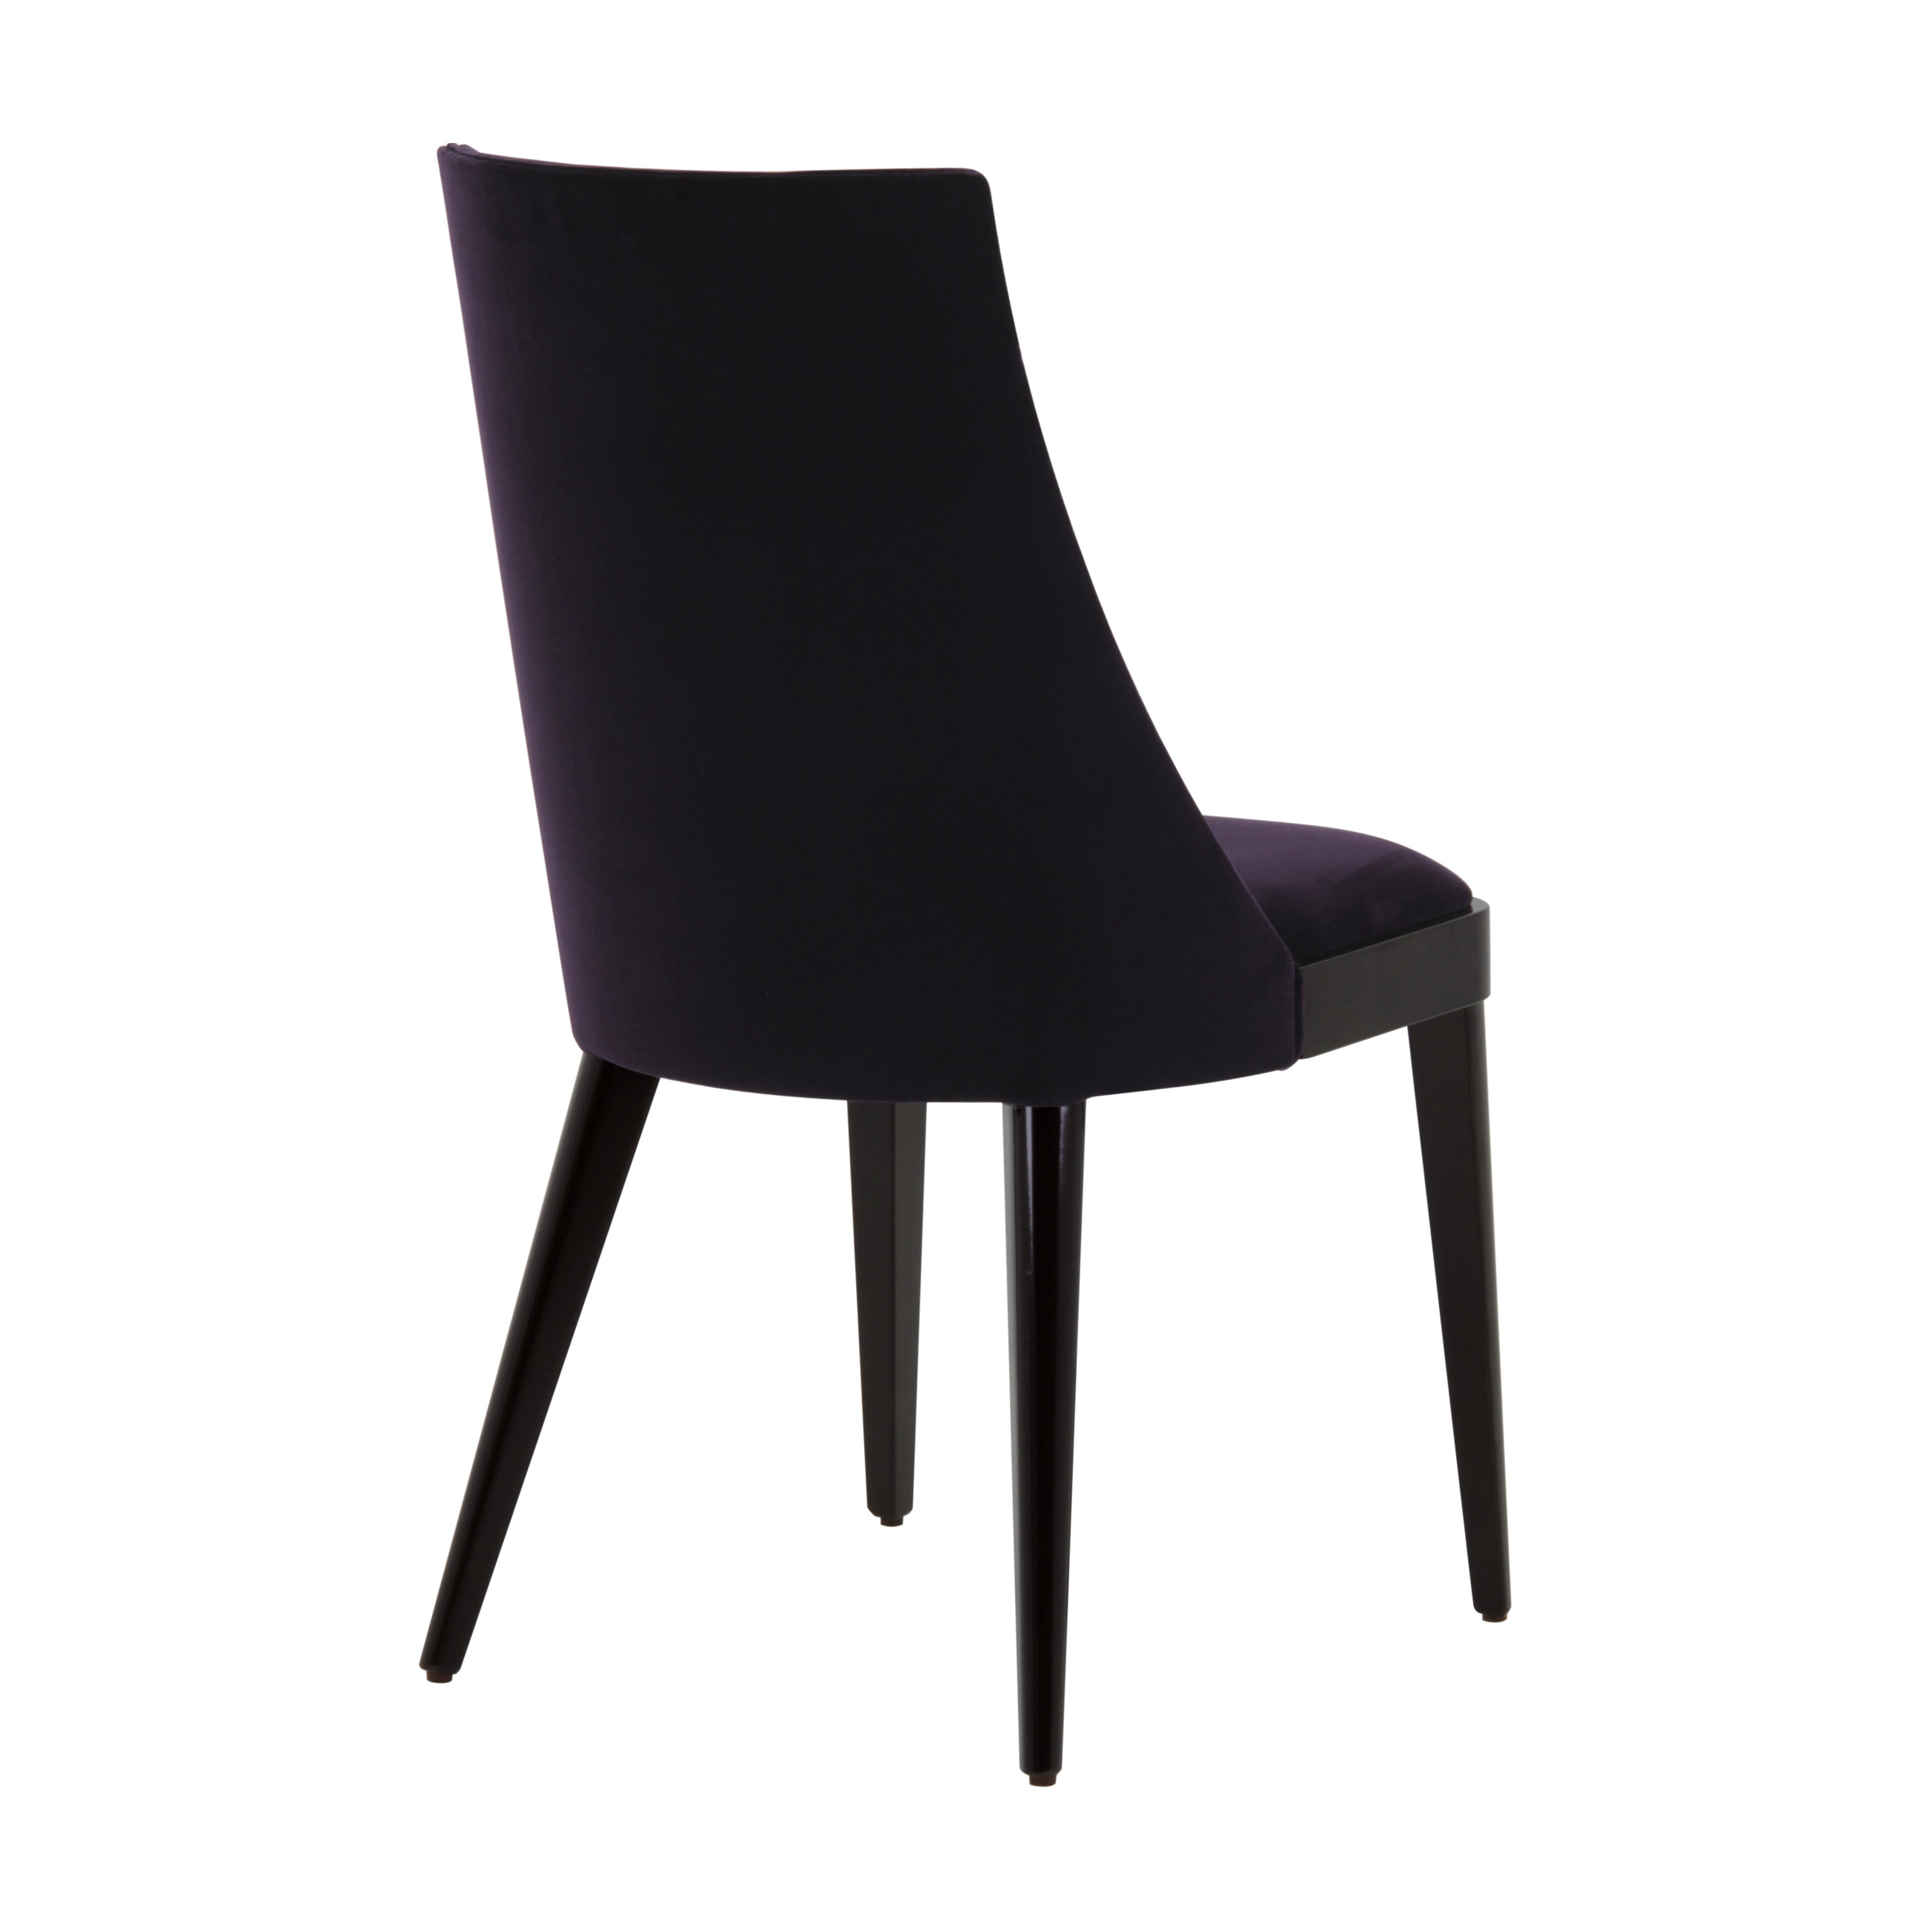 NORVEGIA Chair - Contemporary Italian furniture